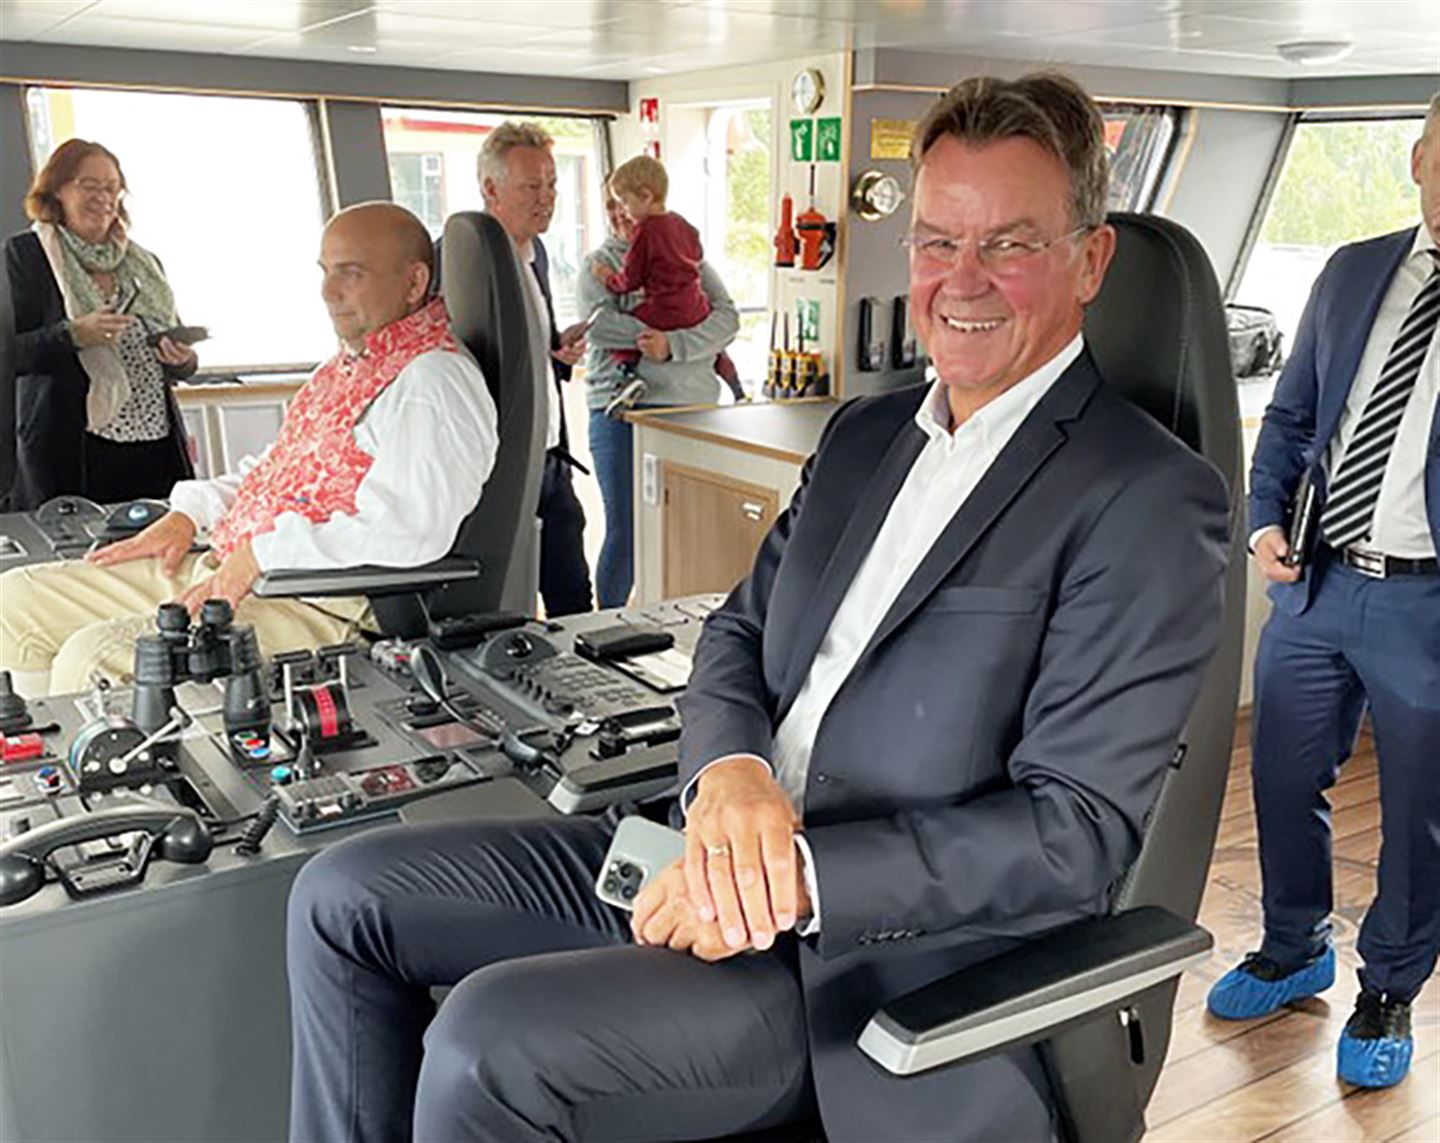 Fylkesdirektør Rune Haugsdal likar seg i førarsetet i den nye fiskebåten. Foto: Lasse Kolbjørn Anke Hansen/Vestland fylkeskommune